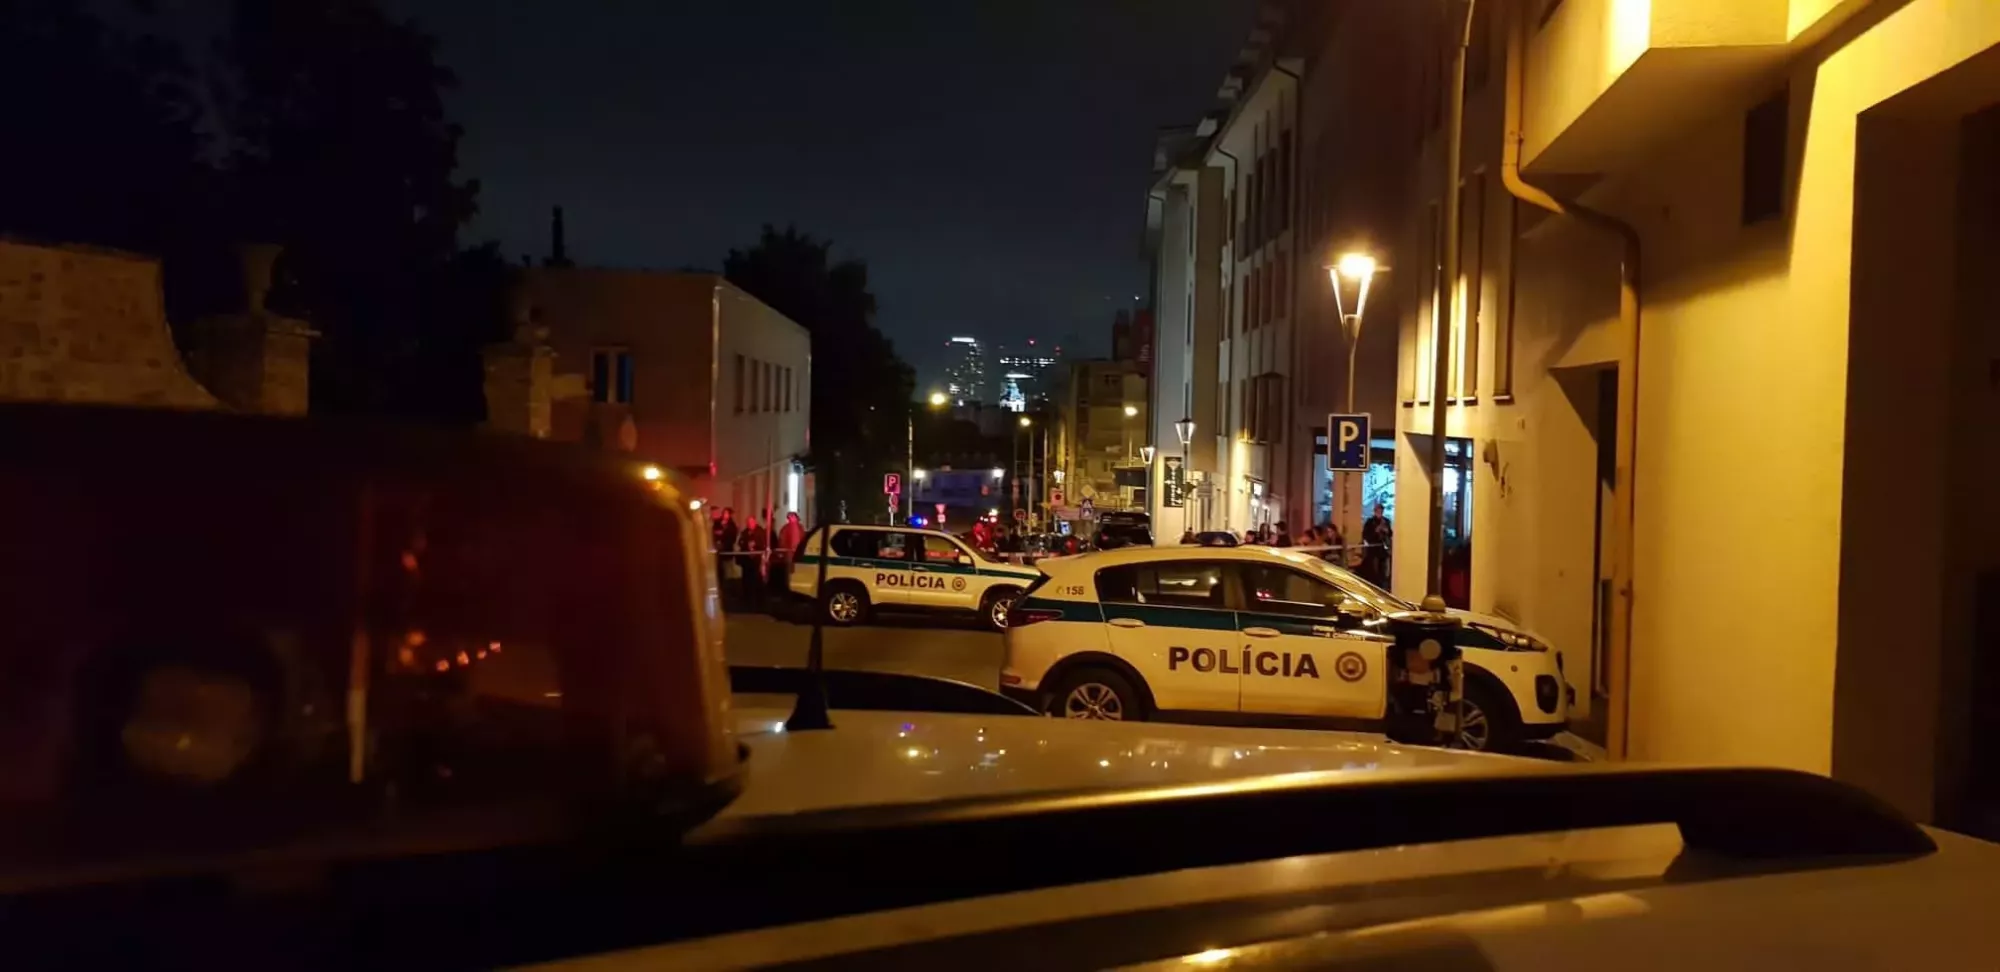 V centru Bratislavy se střílelo